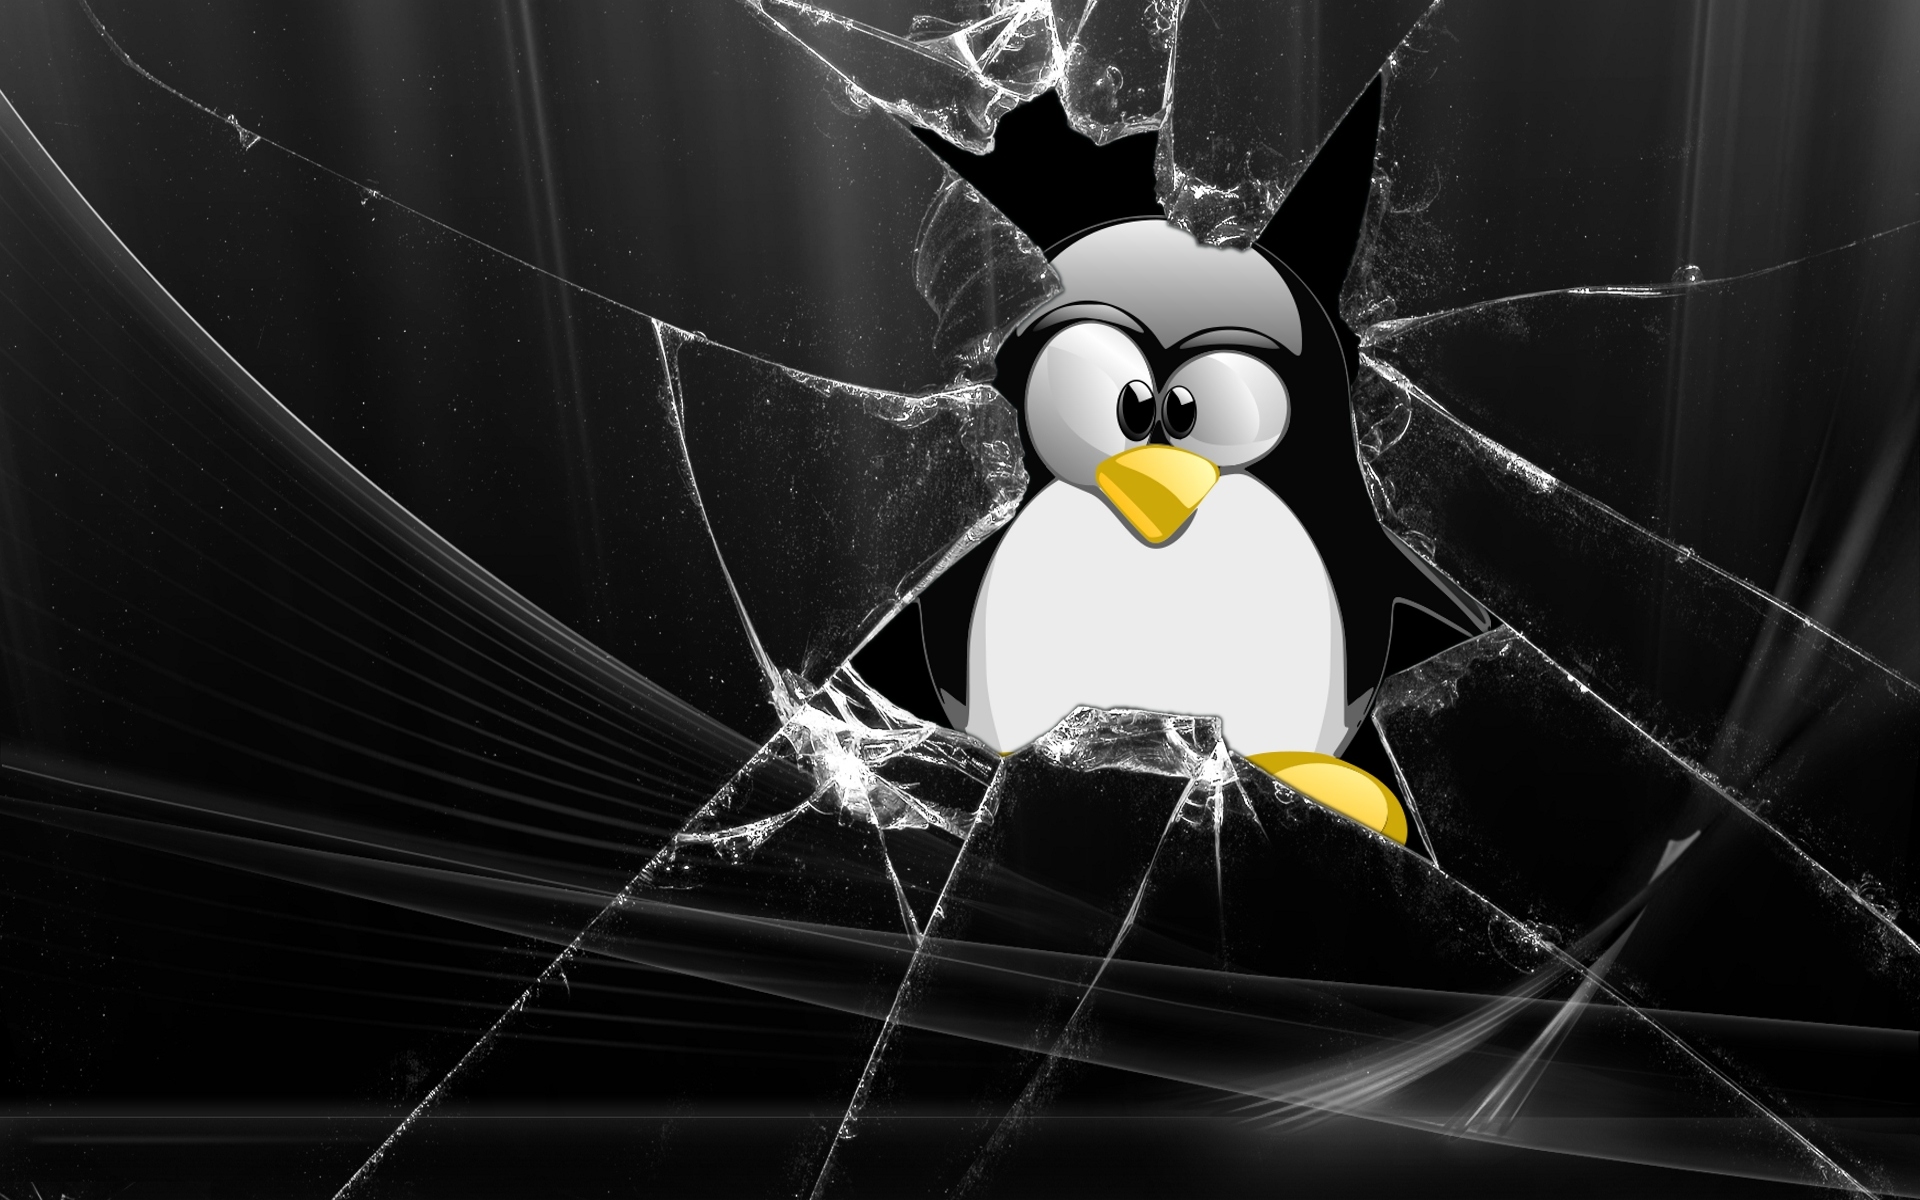 Glass linux tux penguins lunix #Q Pi